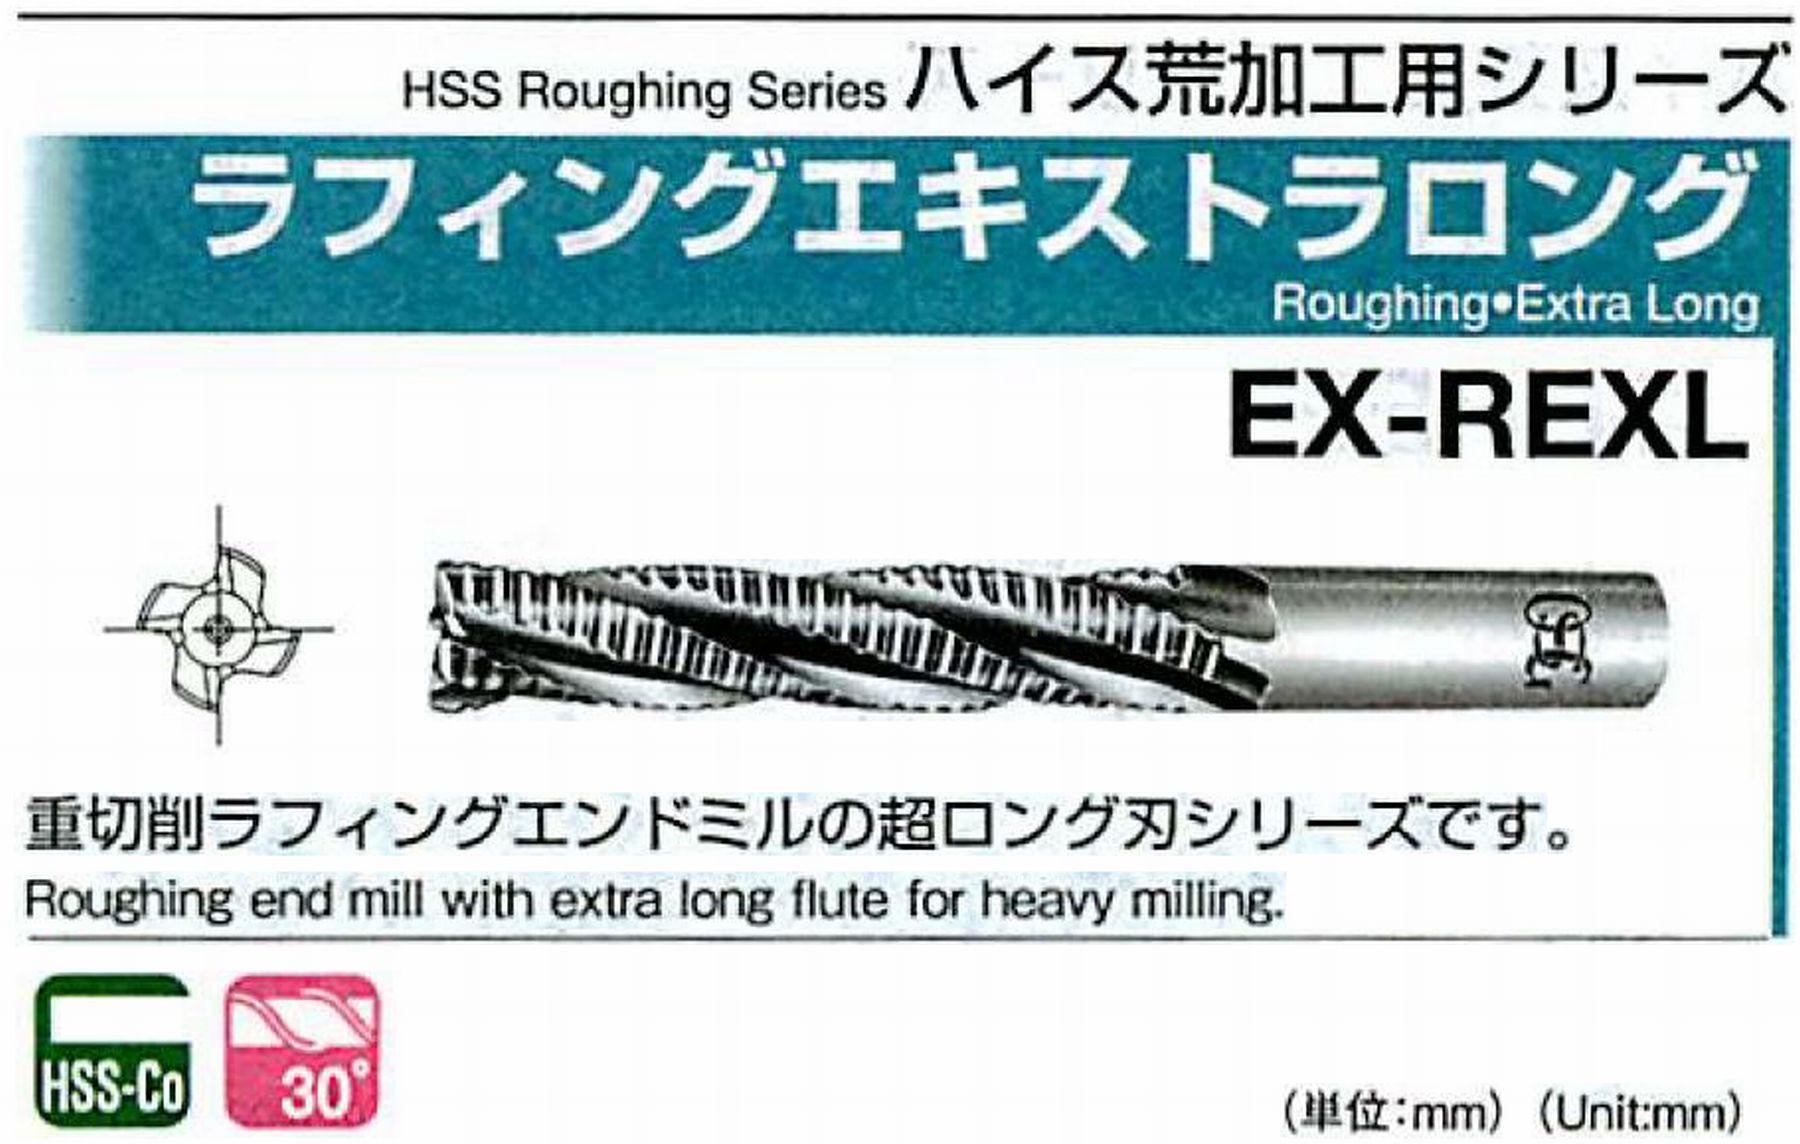 オーエスジー/OSG ラフィングエキストラ ロング EX-REXL 外径30 全長210 刃長125 シャンク径25mm 刃数6